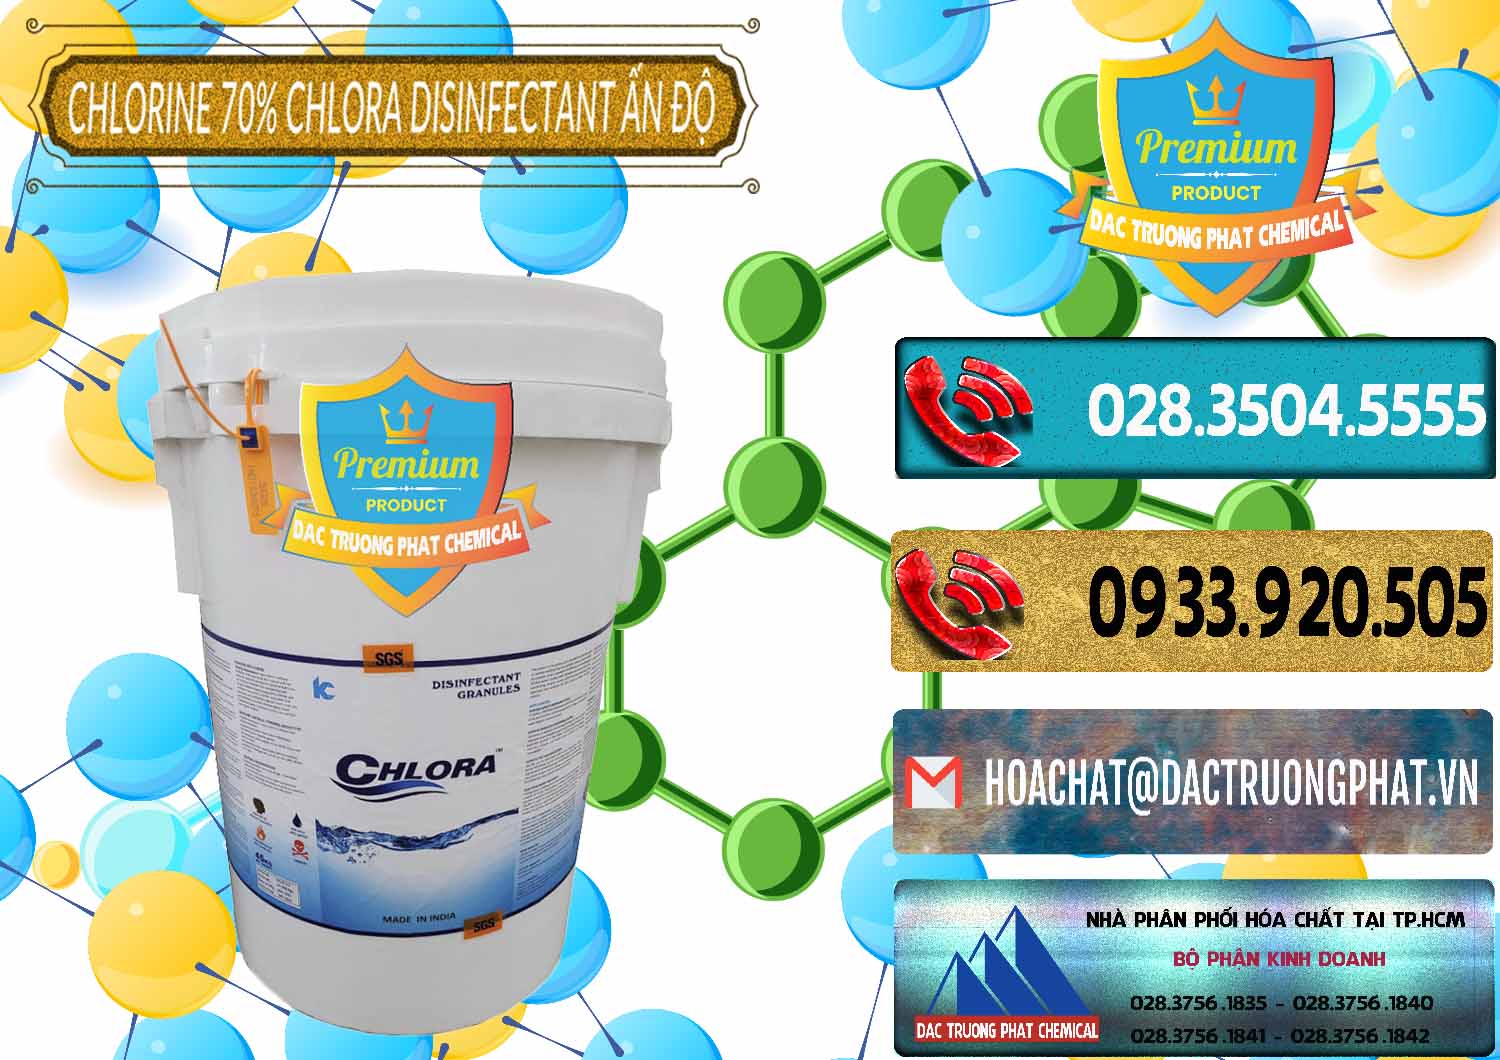 Cty bán _ cung cấp Chlorine – Clorin 70% Chlora Disinfectant Ấn Độ India - 0213 - Đơn vị chuyên cung cấp và kinh doanh hóa chất tại TP.HCM - hoachatdetnhuom.com